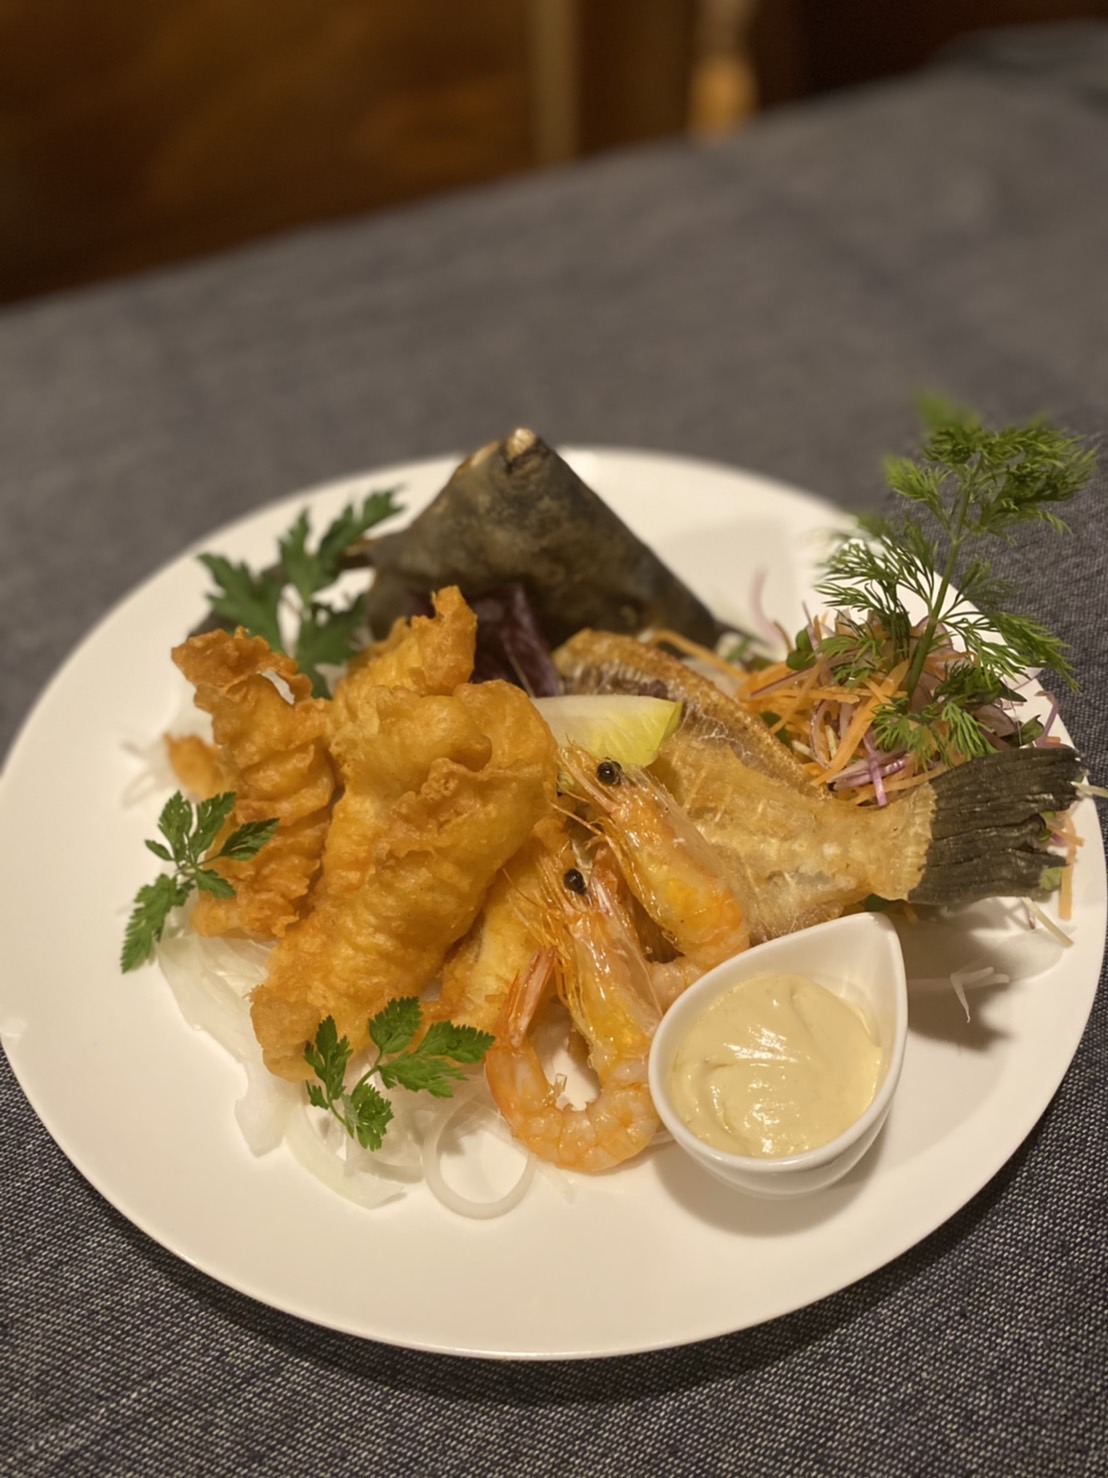 八百屋風長崎産カワハギのフリット 肝マヨネーズ添え 海の恵み 食の底力 Japan 公式レシピサイト